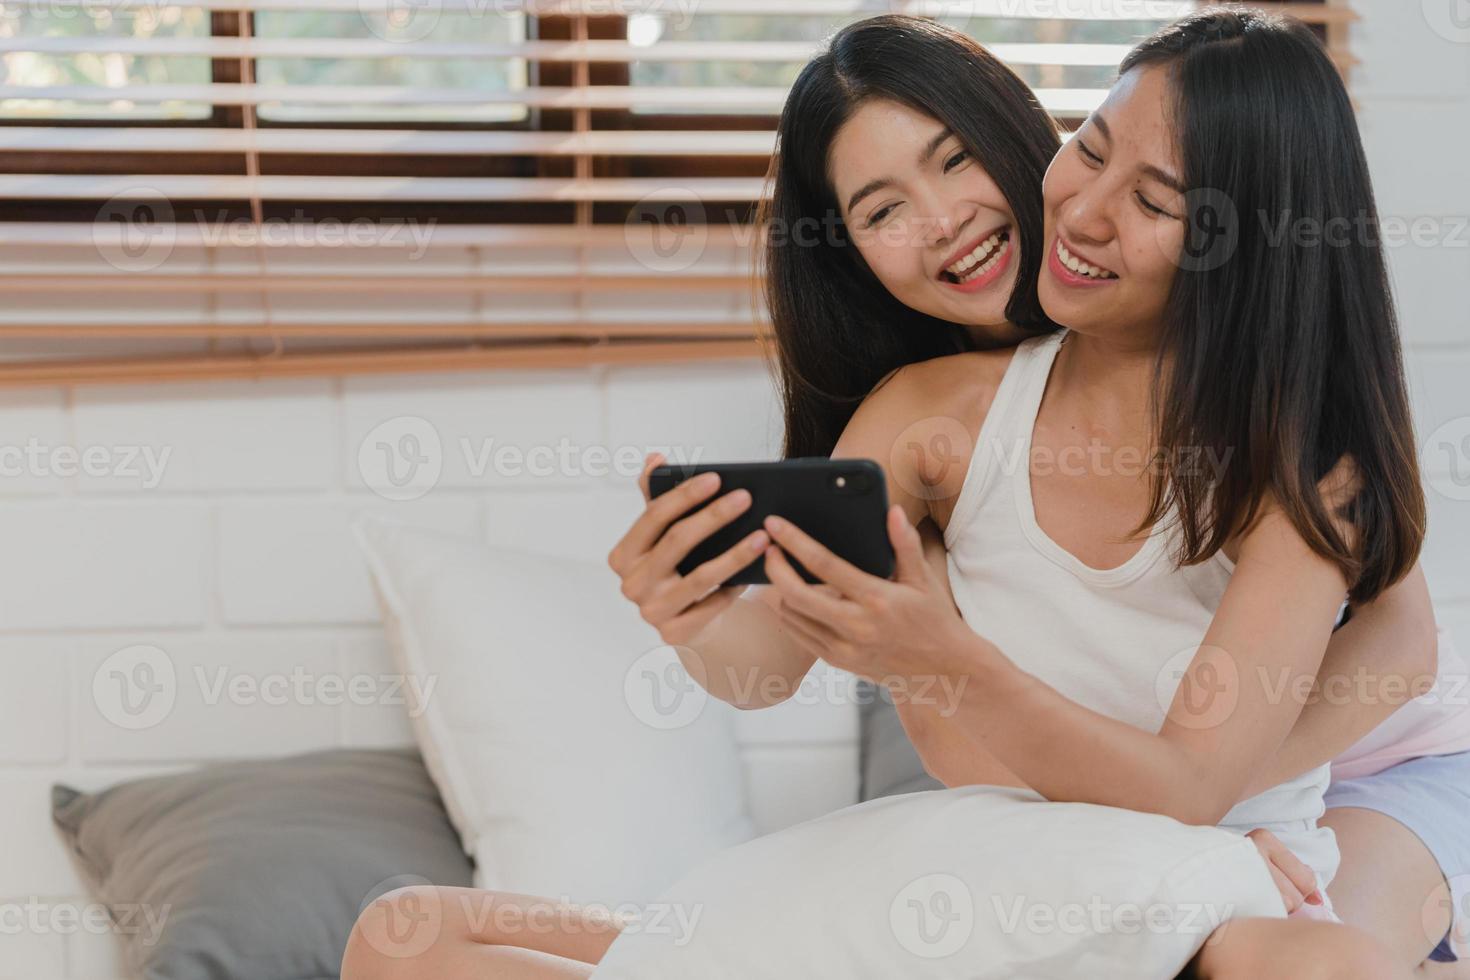 asiatische einflussreiche lesbische lgbtq frauen paar vlog zu hause. junges asiatisches liebhabermädchen, das sich glücklich entspannt, nimmt vlog-video in soziale medien auf, nachdem es morgens im schlafzimmer zu hause auf dem bett liegt. foto